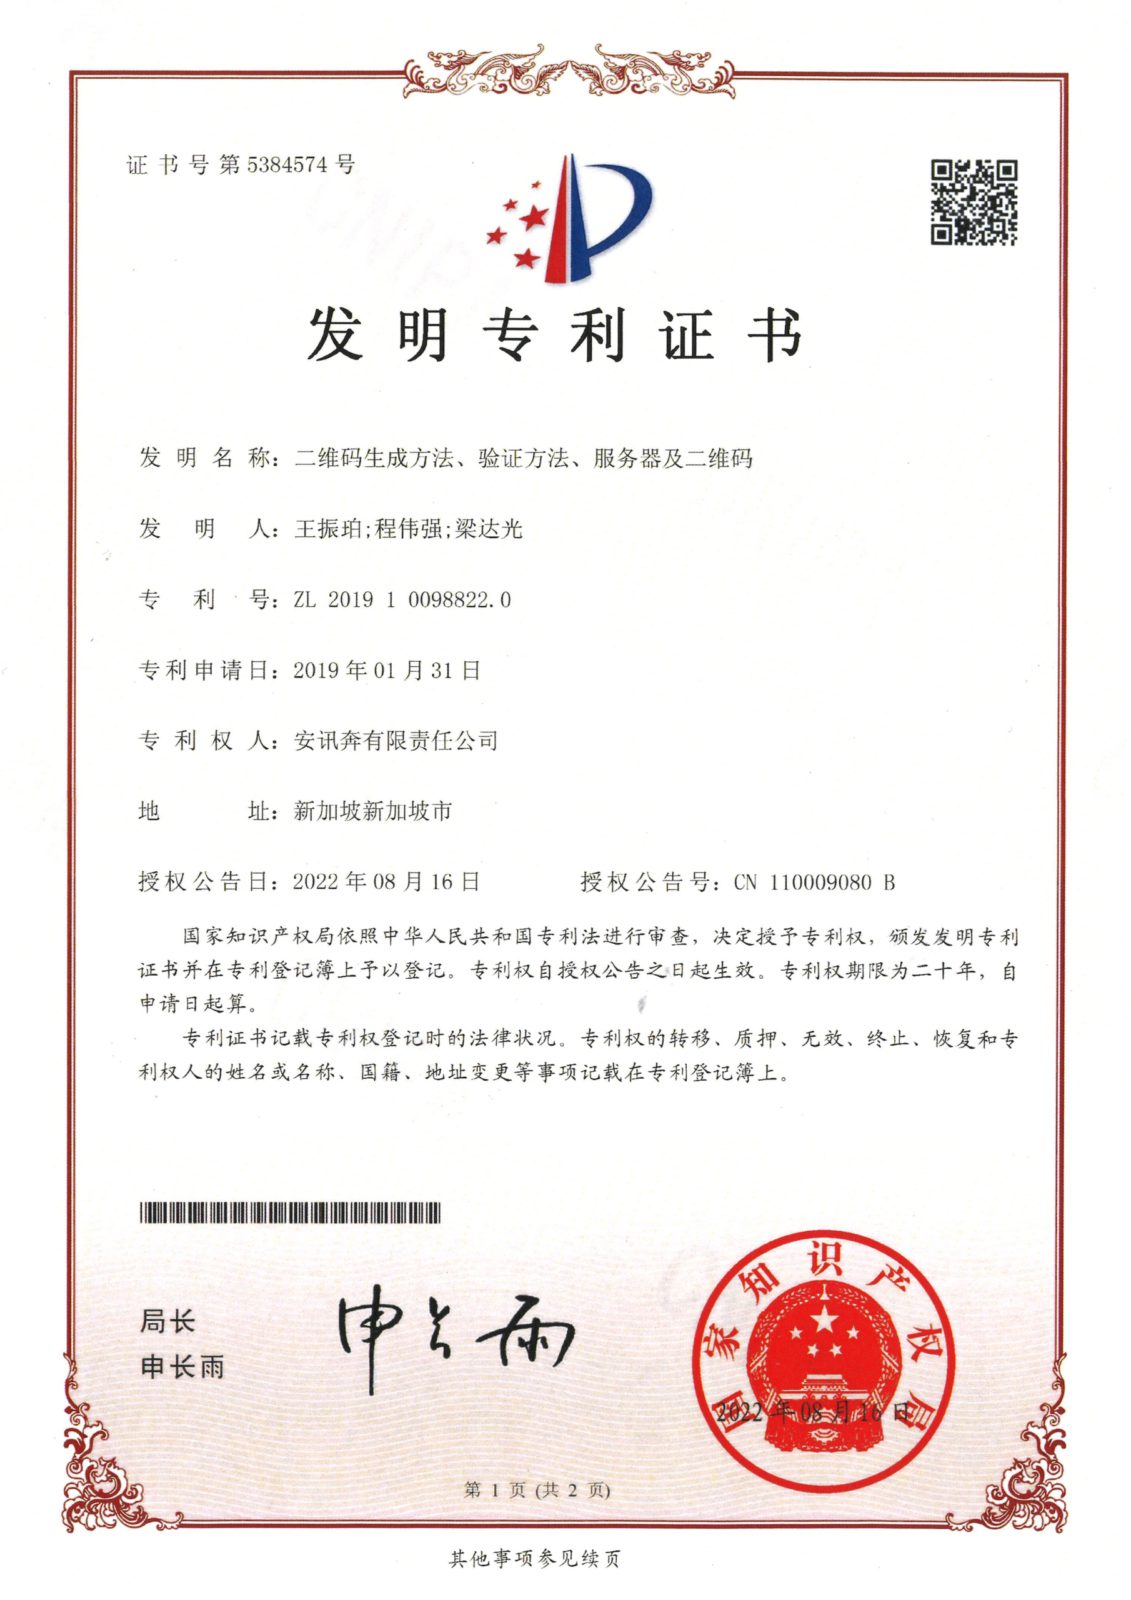 CN Patent Certificate